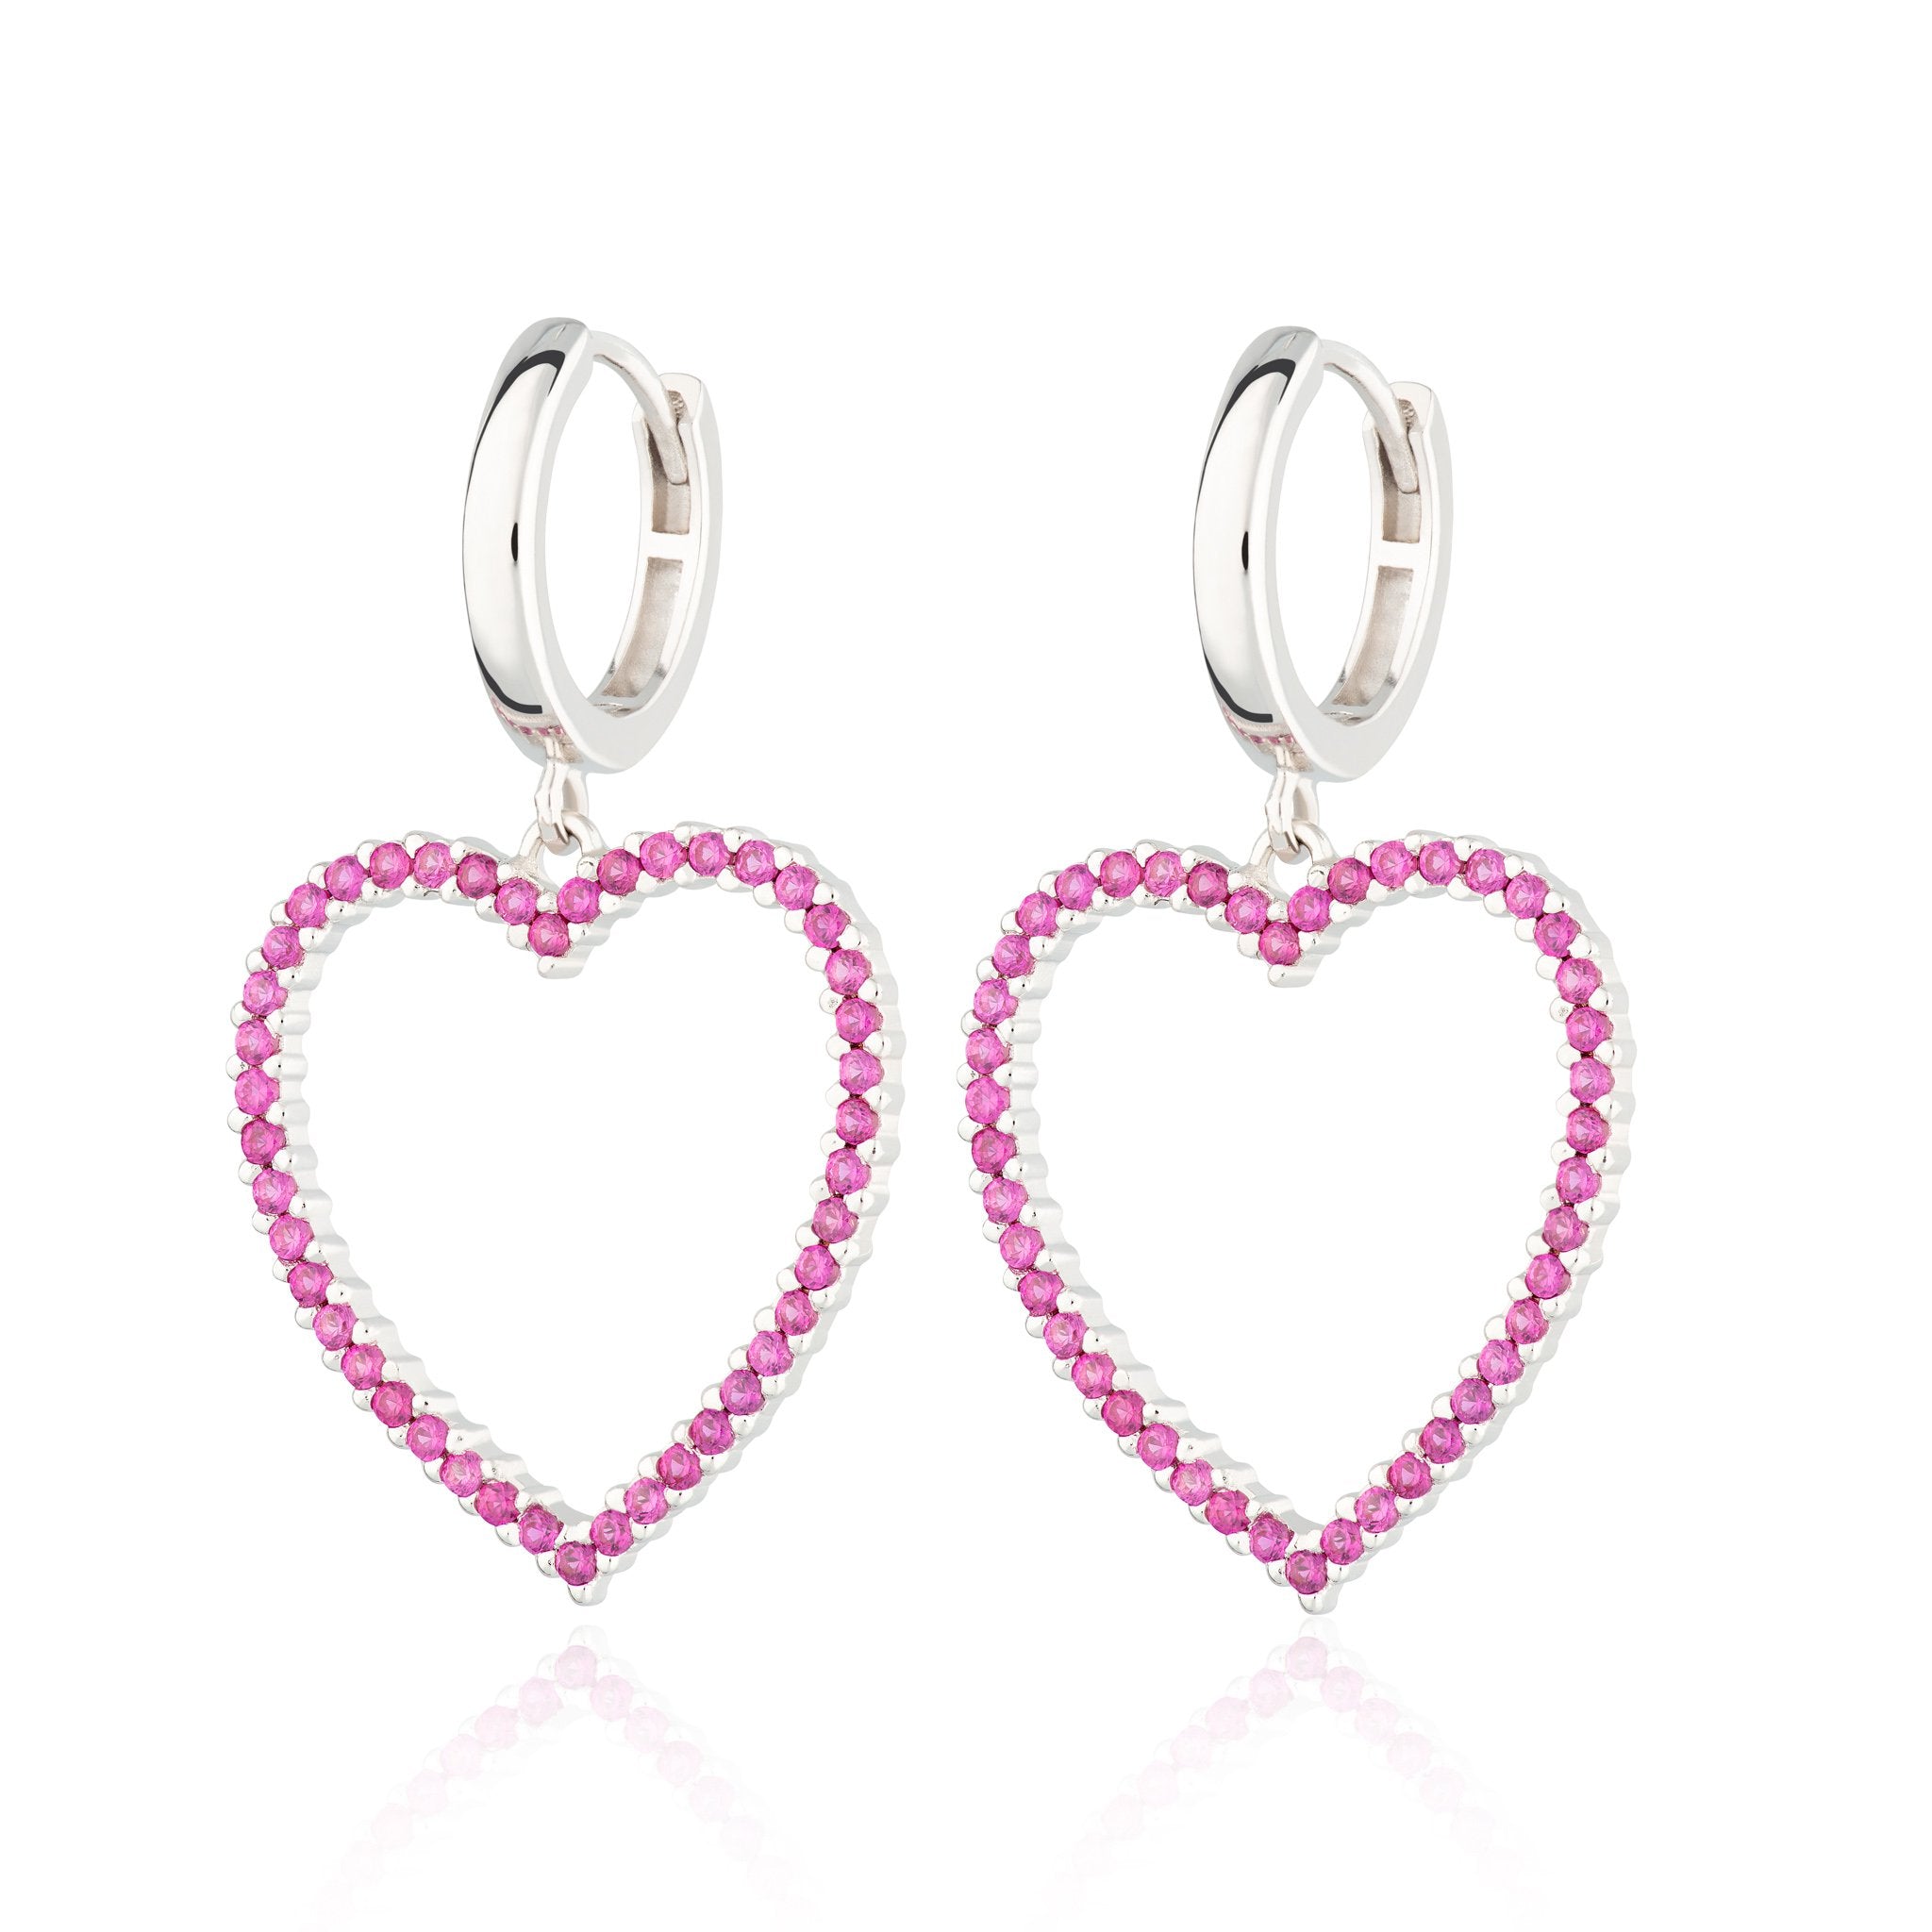  Pink Open Heart Hoop Earrings - by Scream Pretty